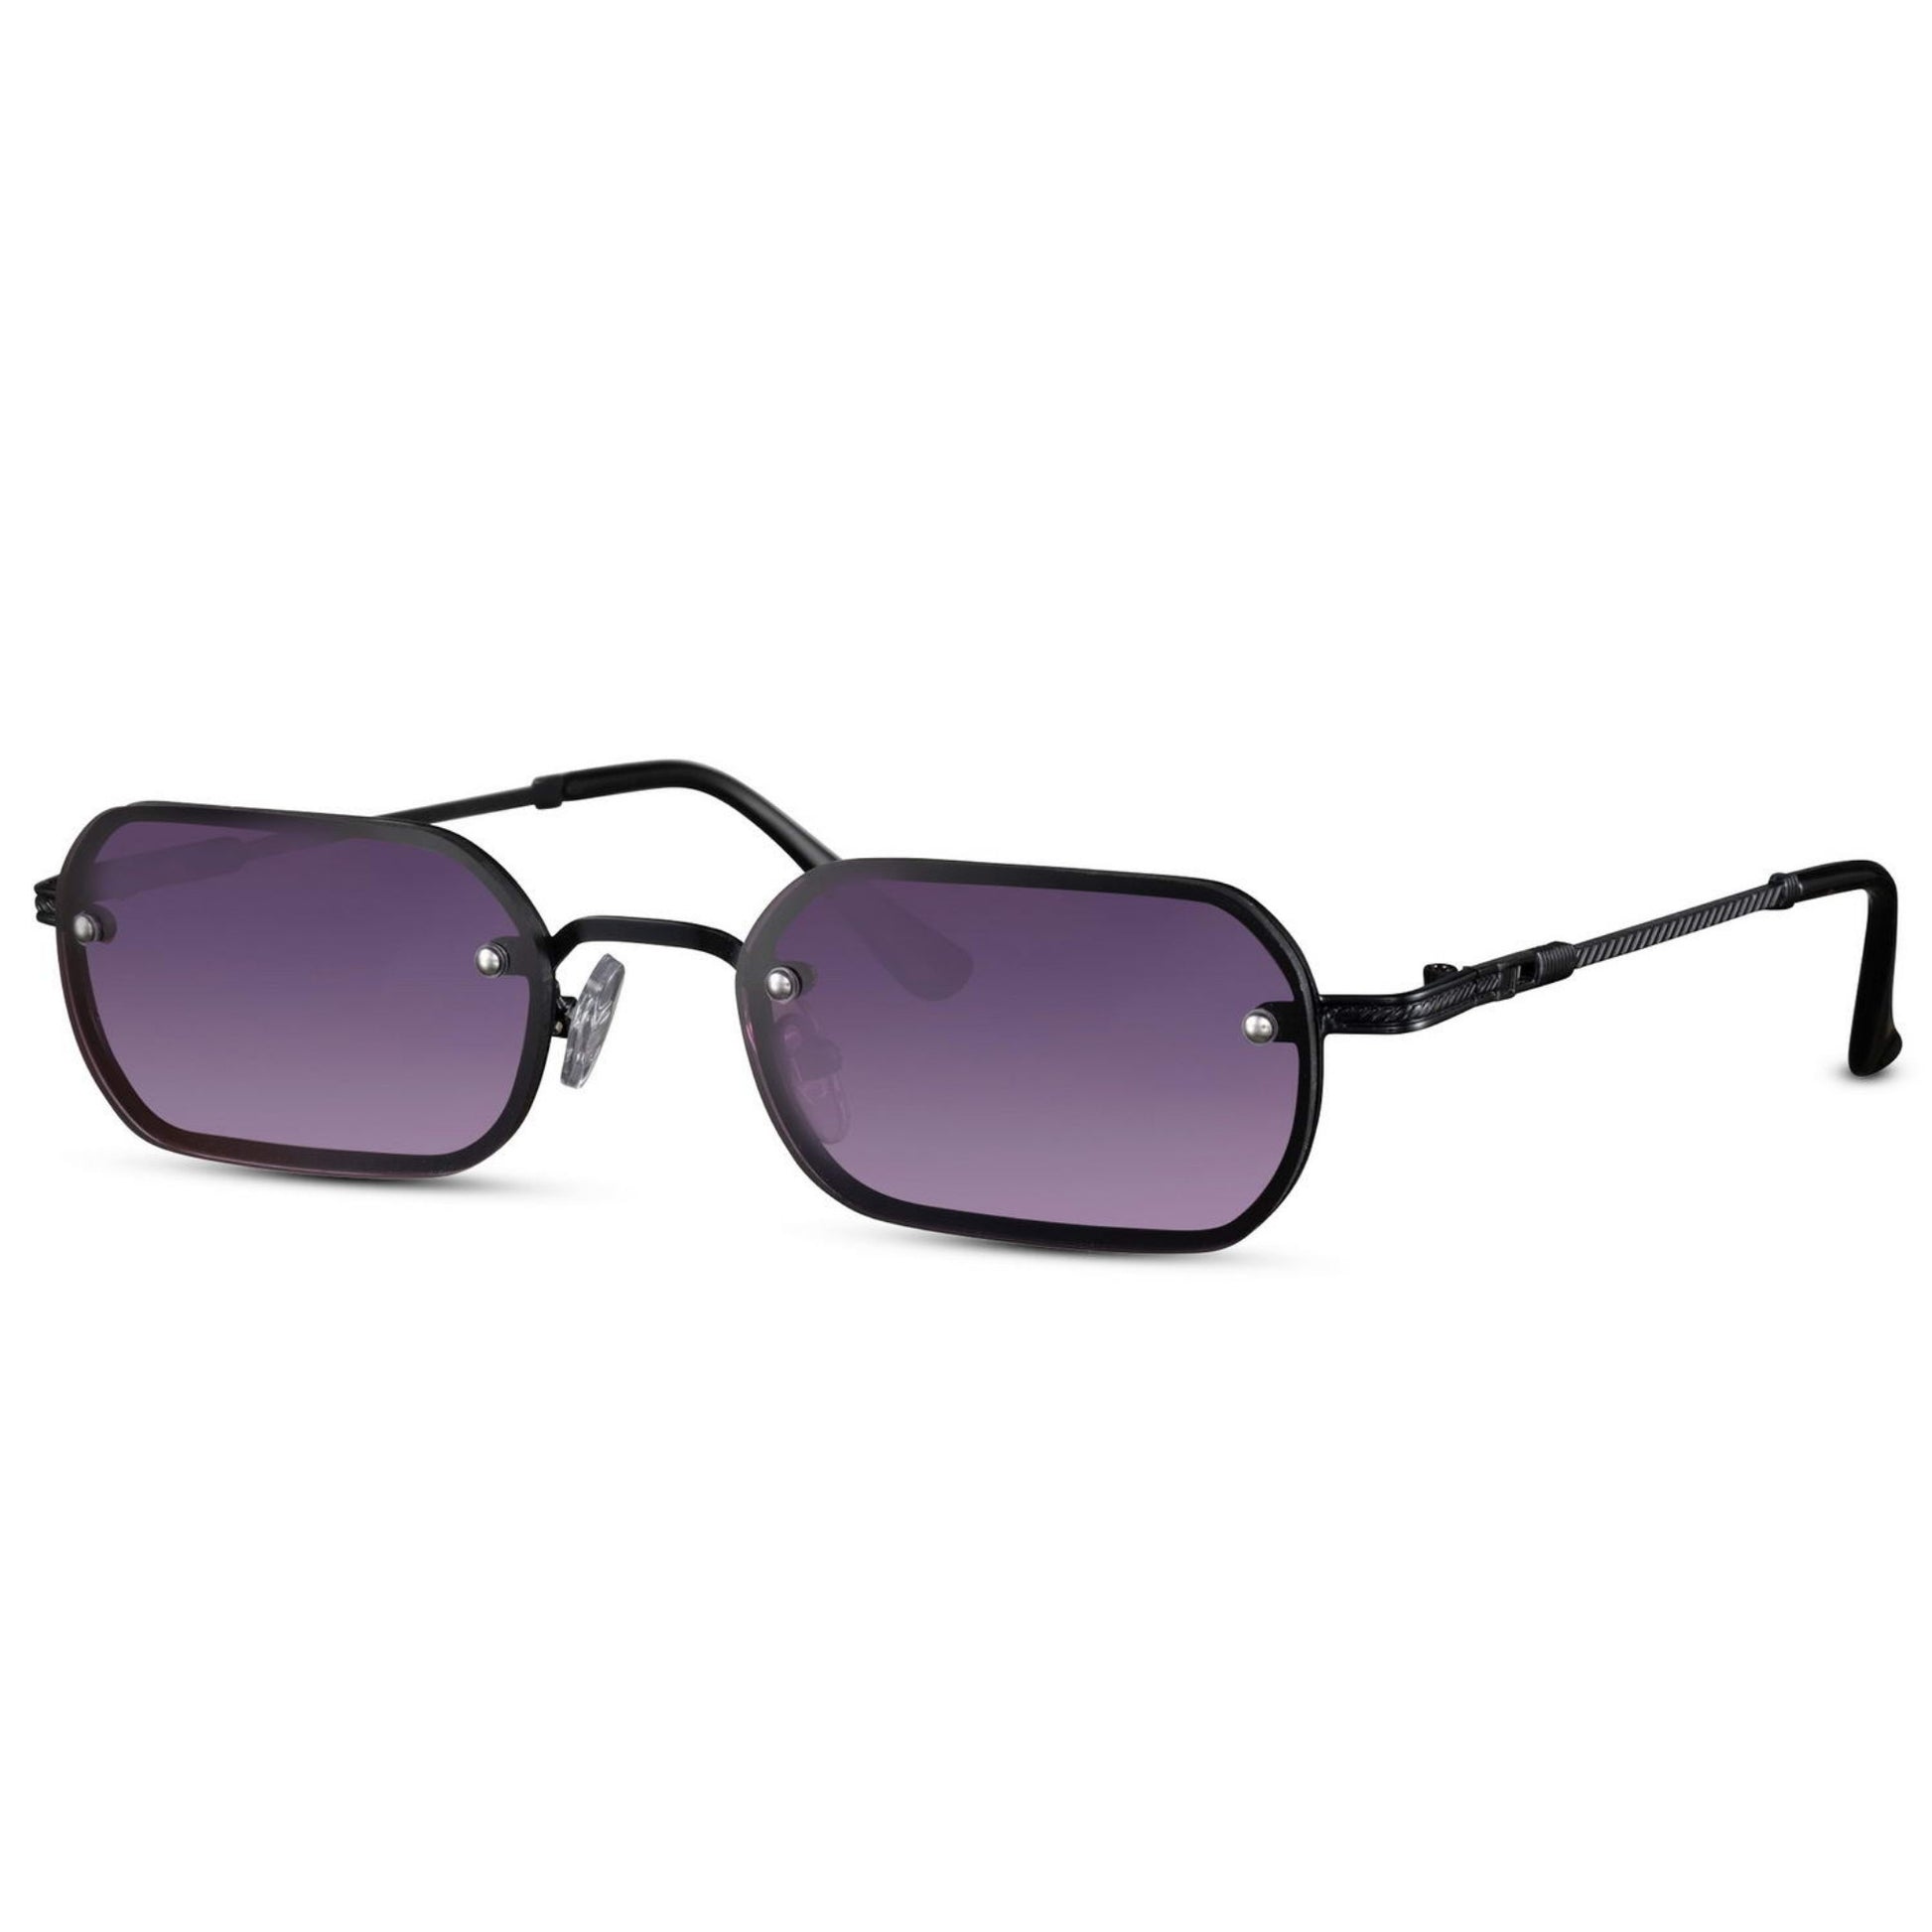 Ορθογώνια Γυαλιά ηλίου New York από την Exposure Sunglasses με προστασία UV400 με μαύρο σκελετό και μωβ φακό.Πλάγια προβολή.